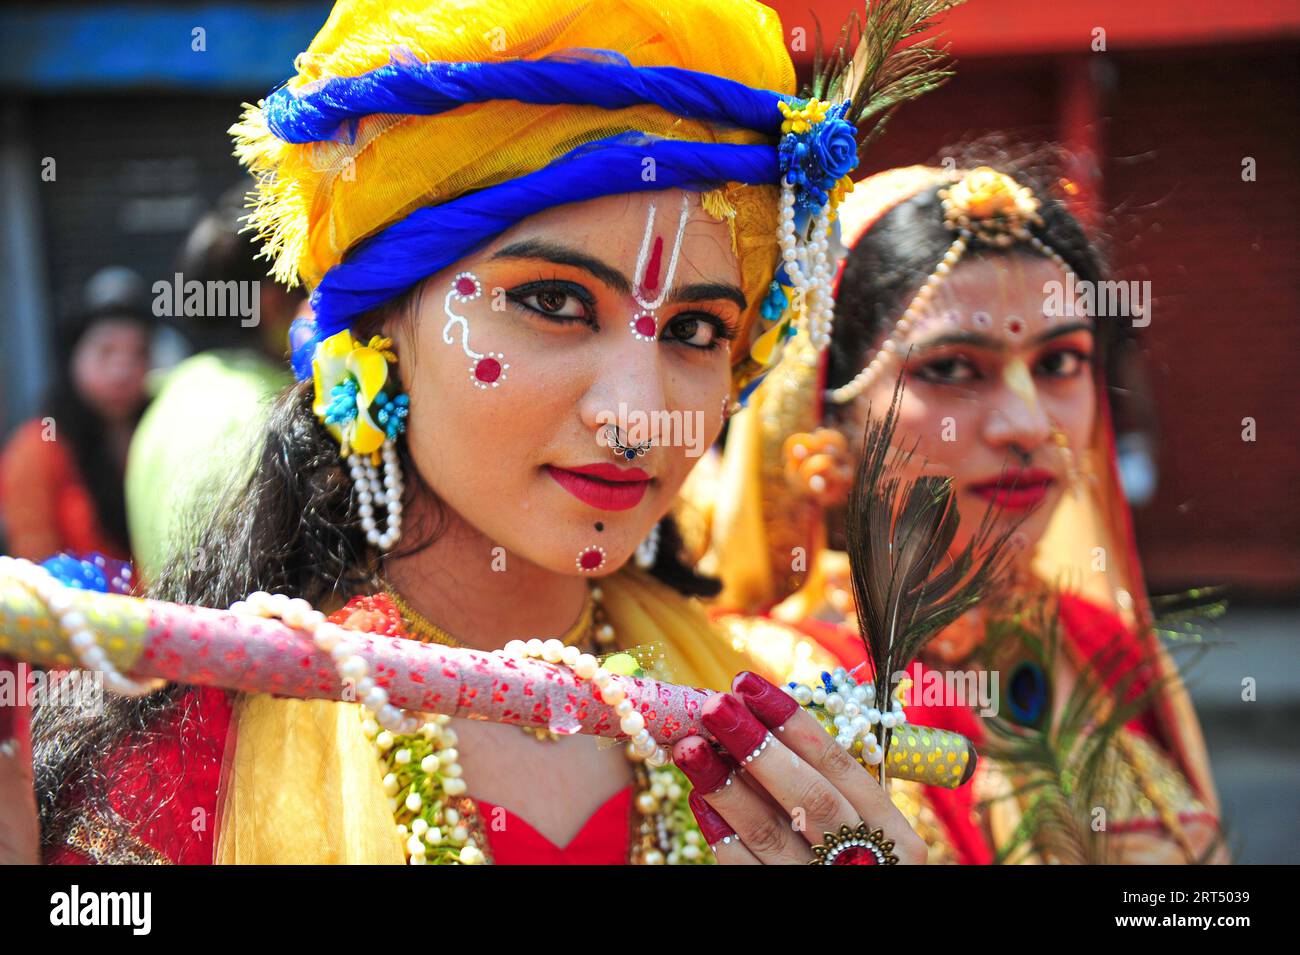 Junge Mädchen verkleiden sich als Radha und Krishna während der farbenfrohen Kundgebung der Krishna Janmashtami-Veranstaltung, die von hinduistischen Anhängern anlässlich des Geburtsjubiläums von Lord Krishna gefeiert wird, der als achter Avatar oder Inkarnation von Lord Vishnu gilt. Sylhet, Bangladesch. Stockfoto